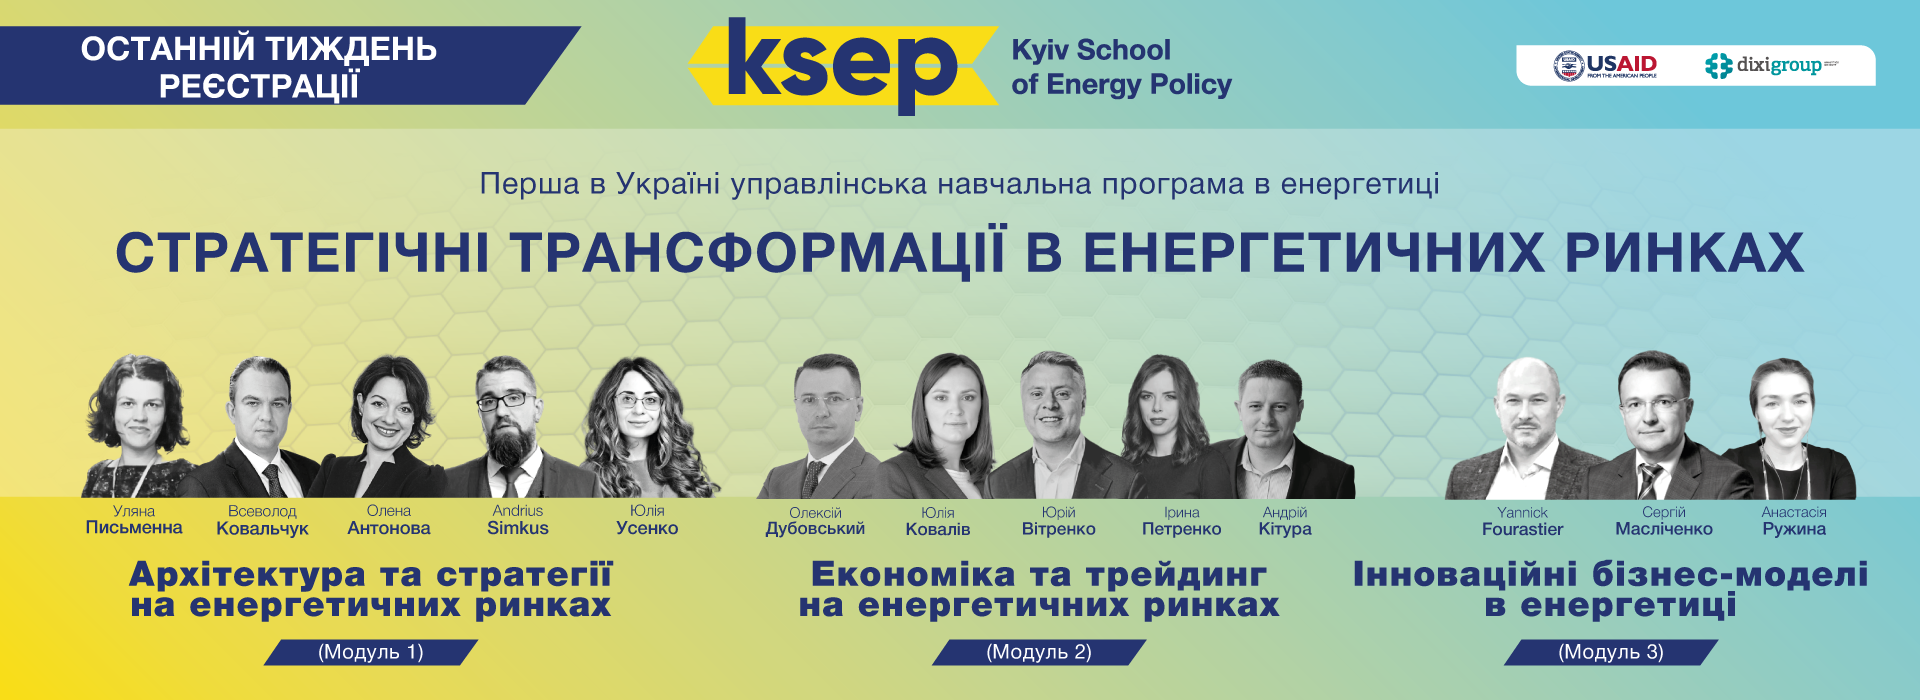 Перша в Україні управлінська навчальна програма в енергетиці 